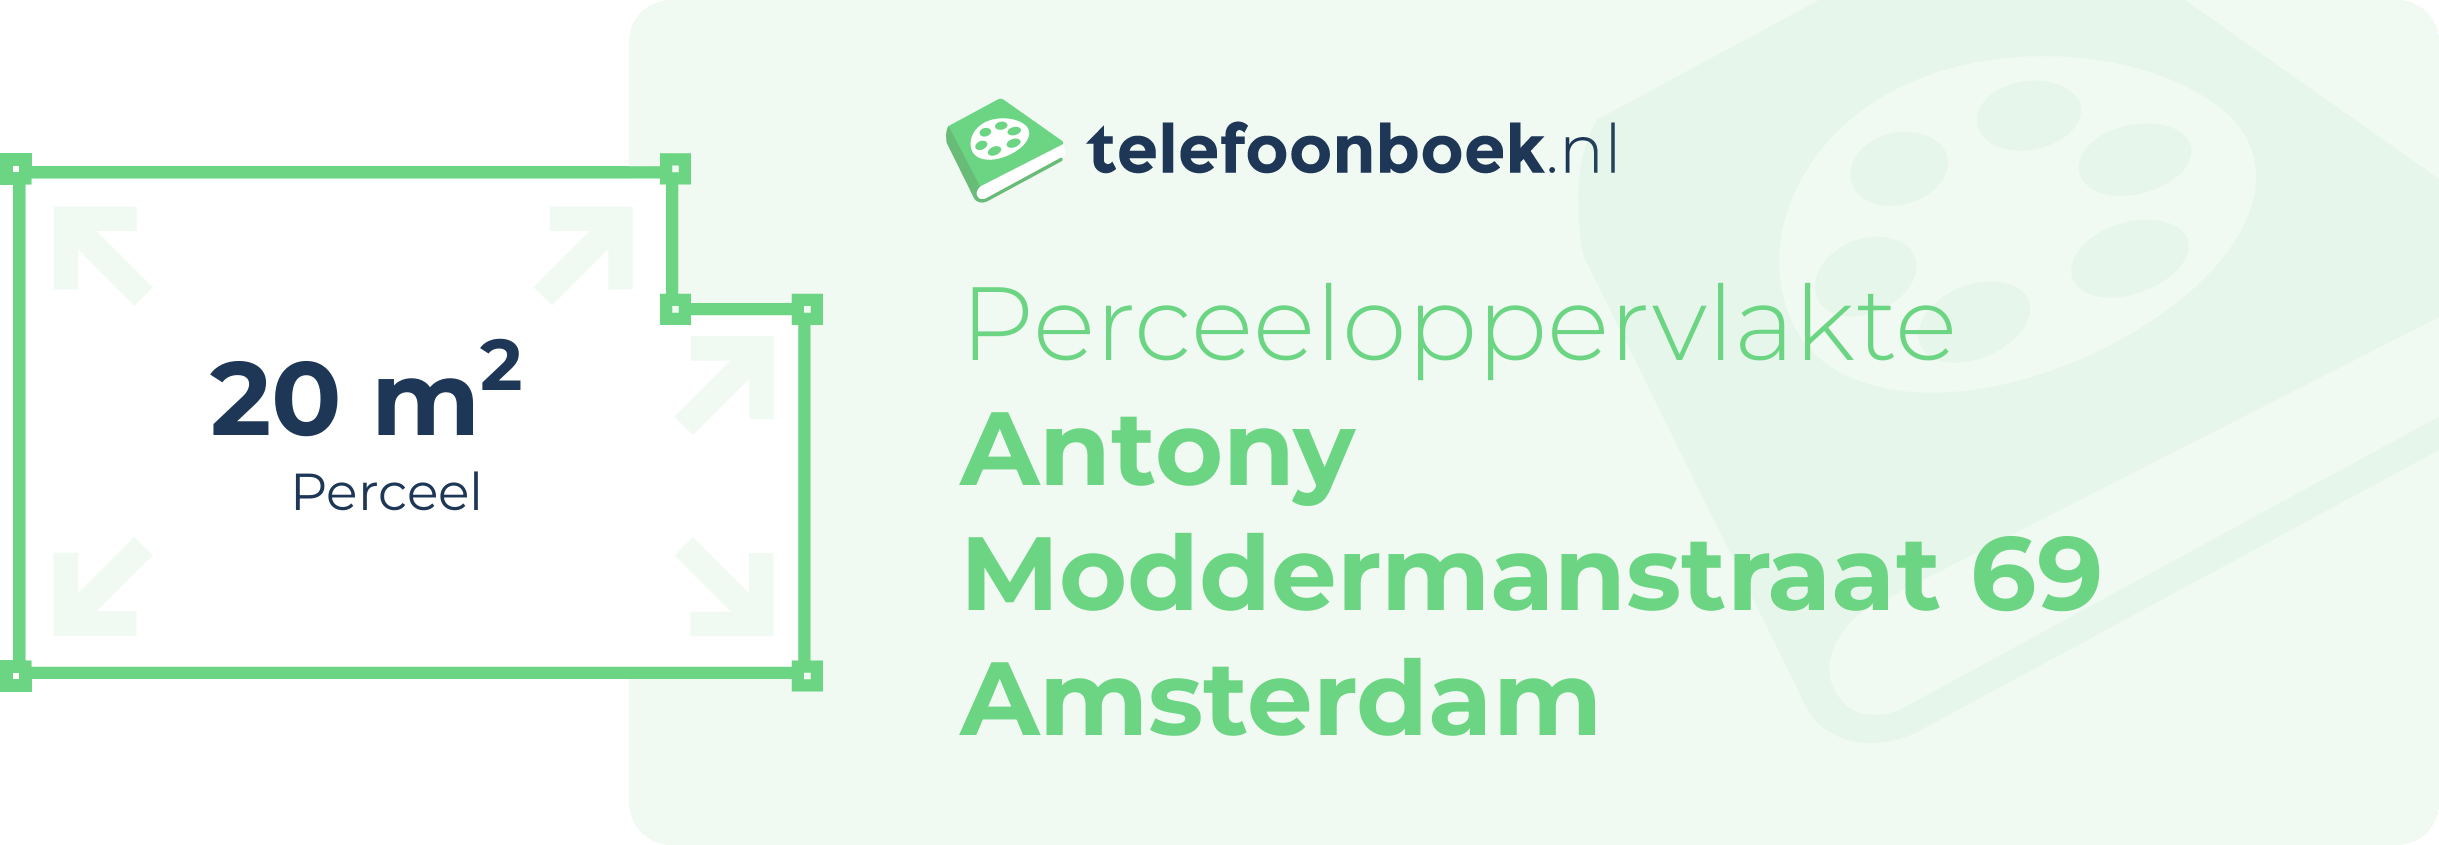 Perceeloppervlakte Antony Moddermanstraat 69 Amsterdam